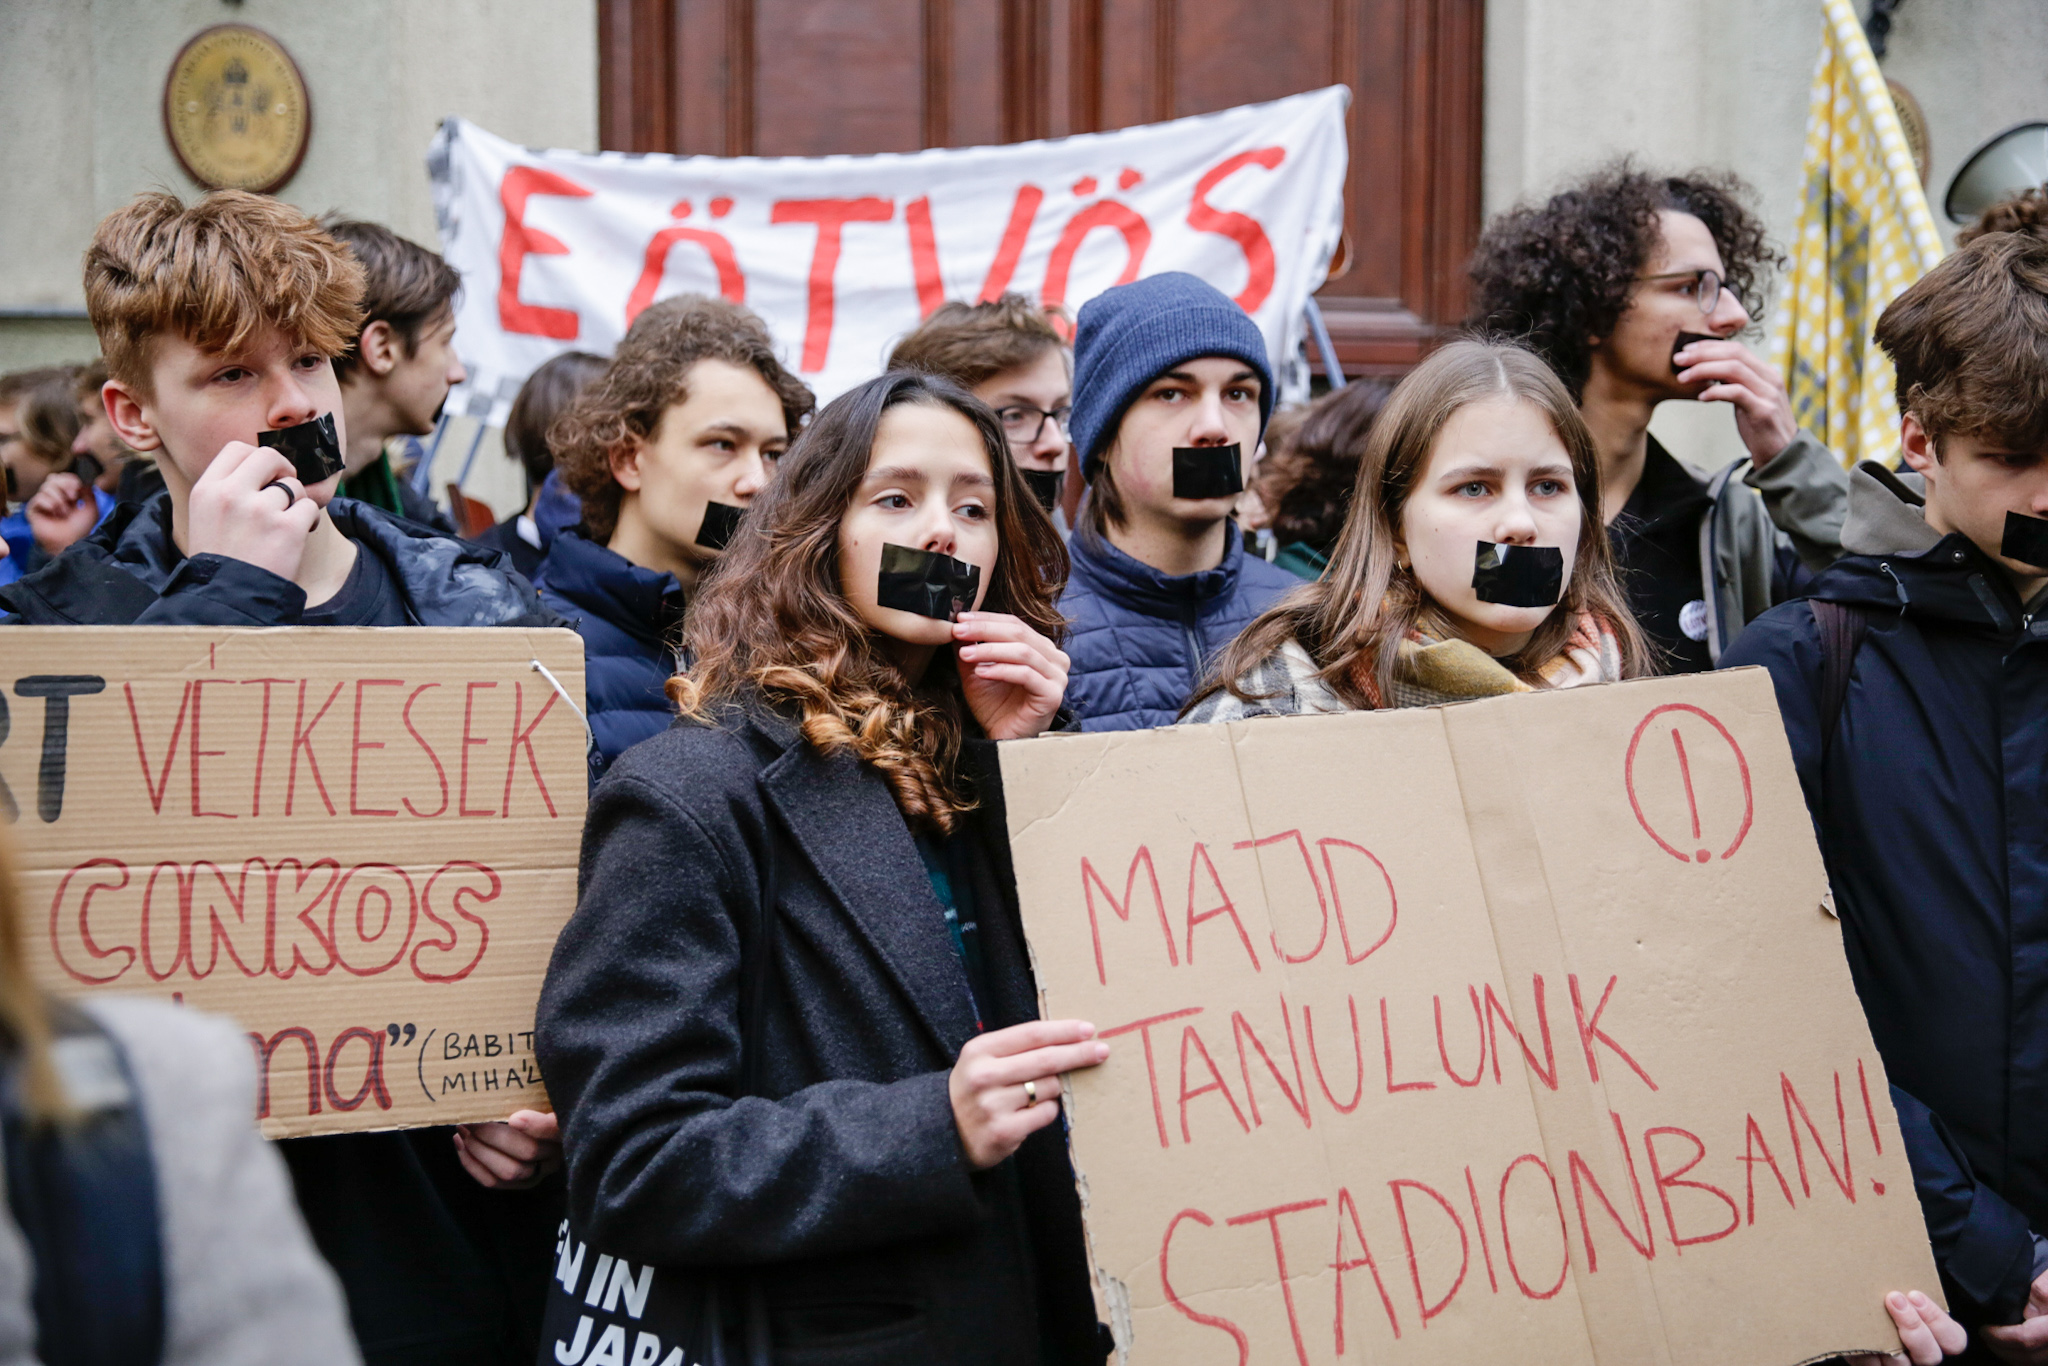 Eltorlaszolták a bejáratot és leragasztották a szájukat a diákok az Eötvös Gimnázium előtt